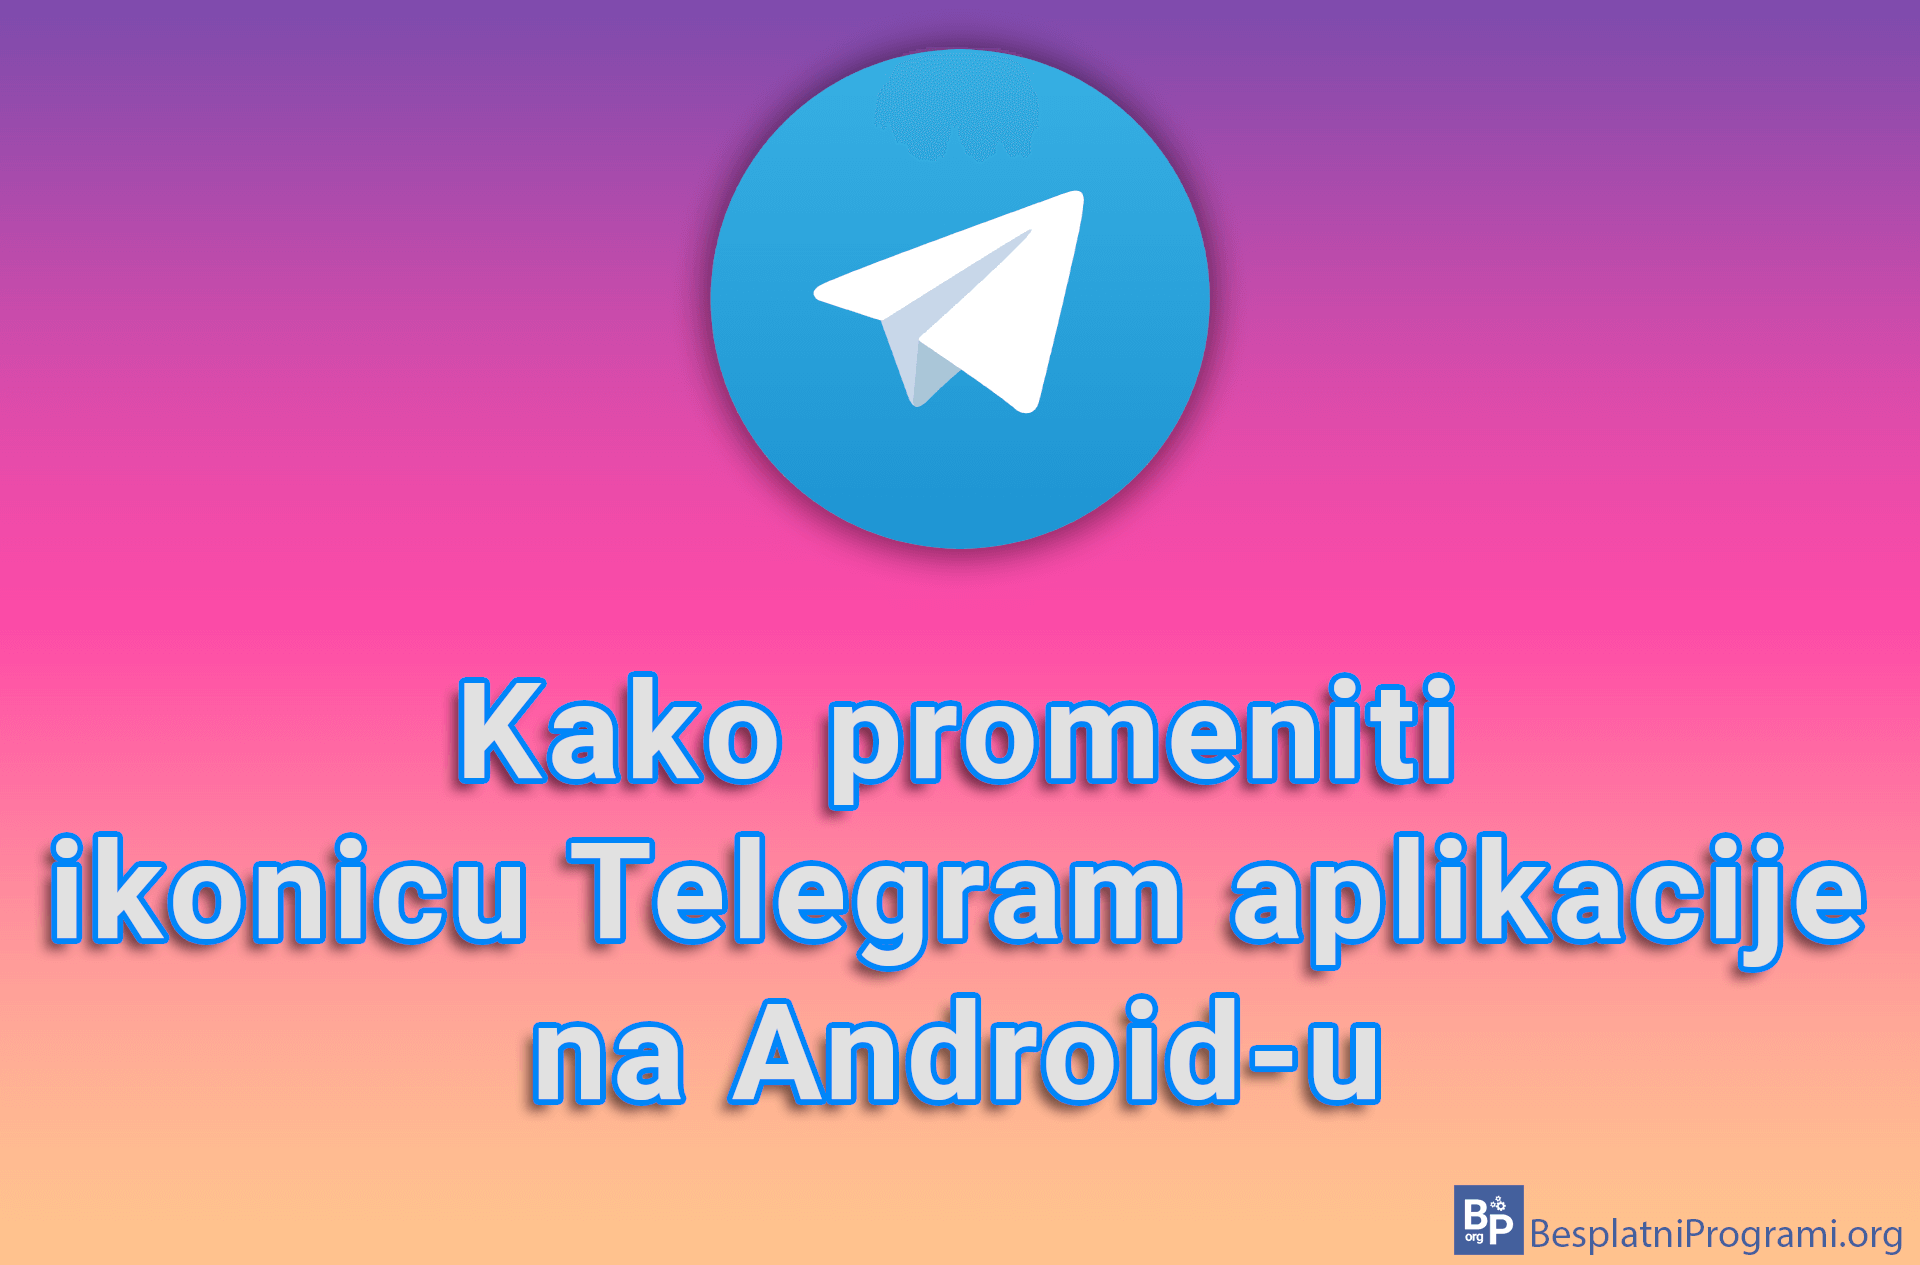 Kako promeniti ikonicu Telegram aplikacije na Android-u